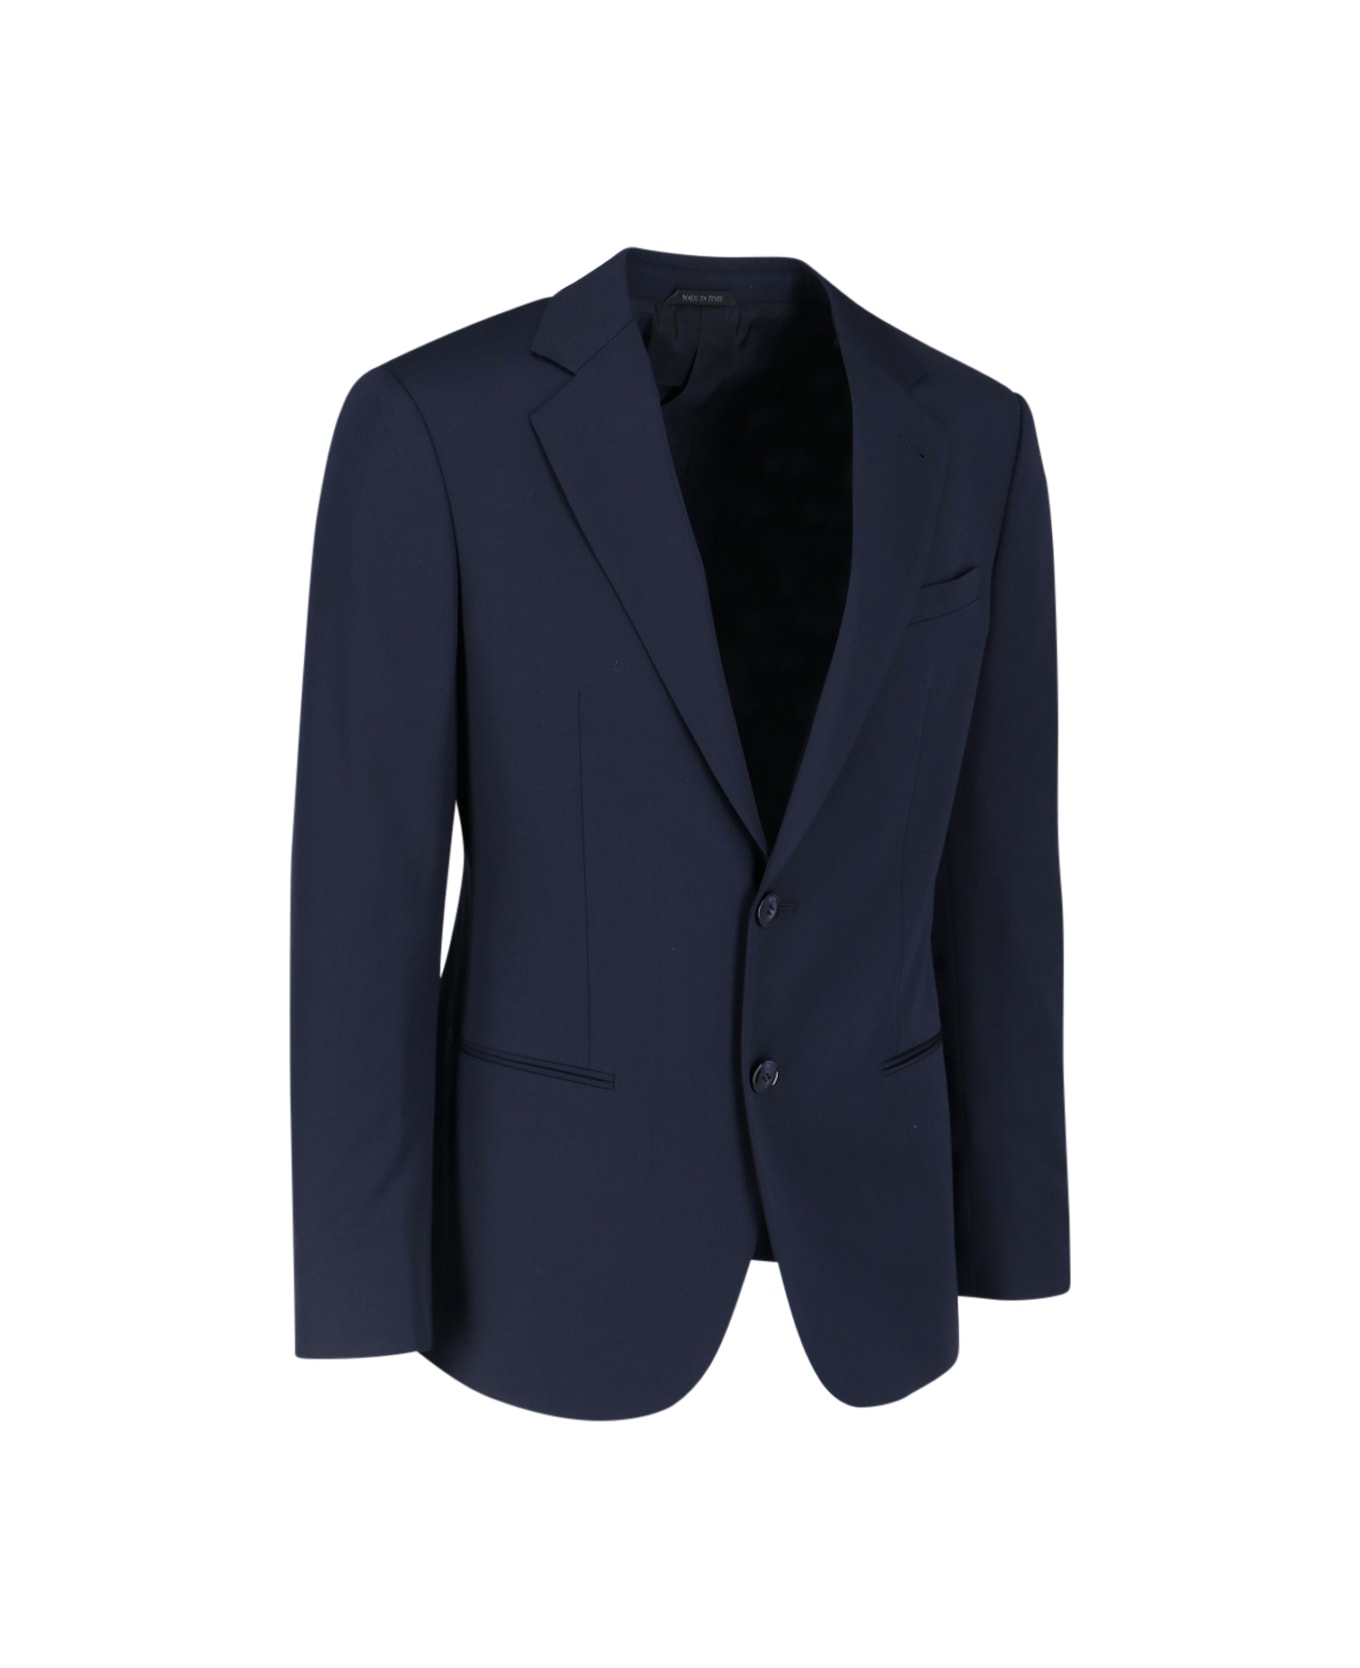 Giorgio Armani Single-breasted Suit - Ubuv スーツ